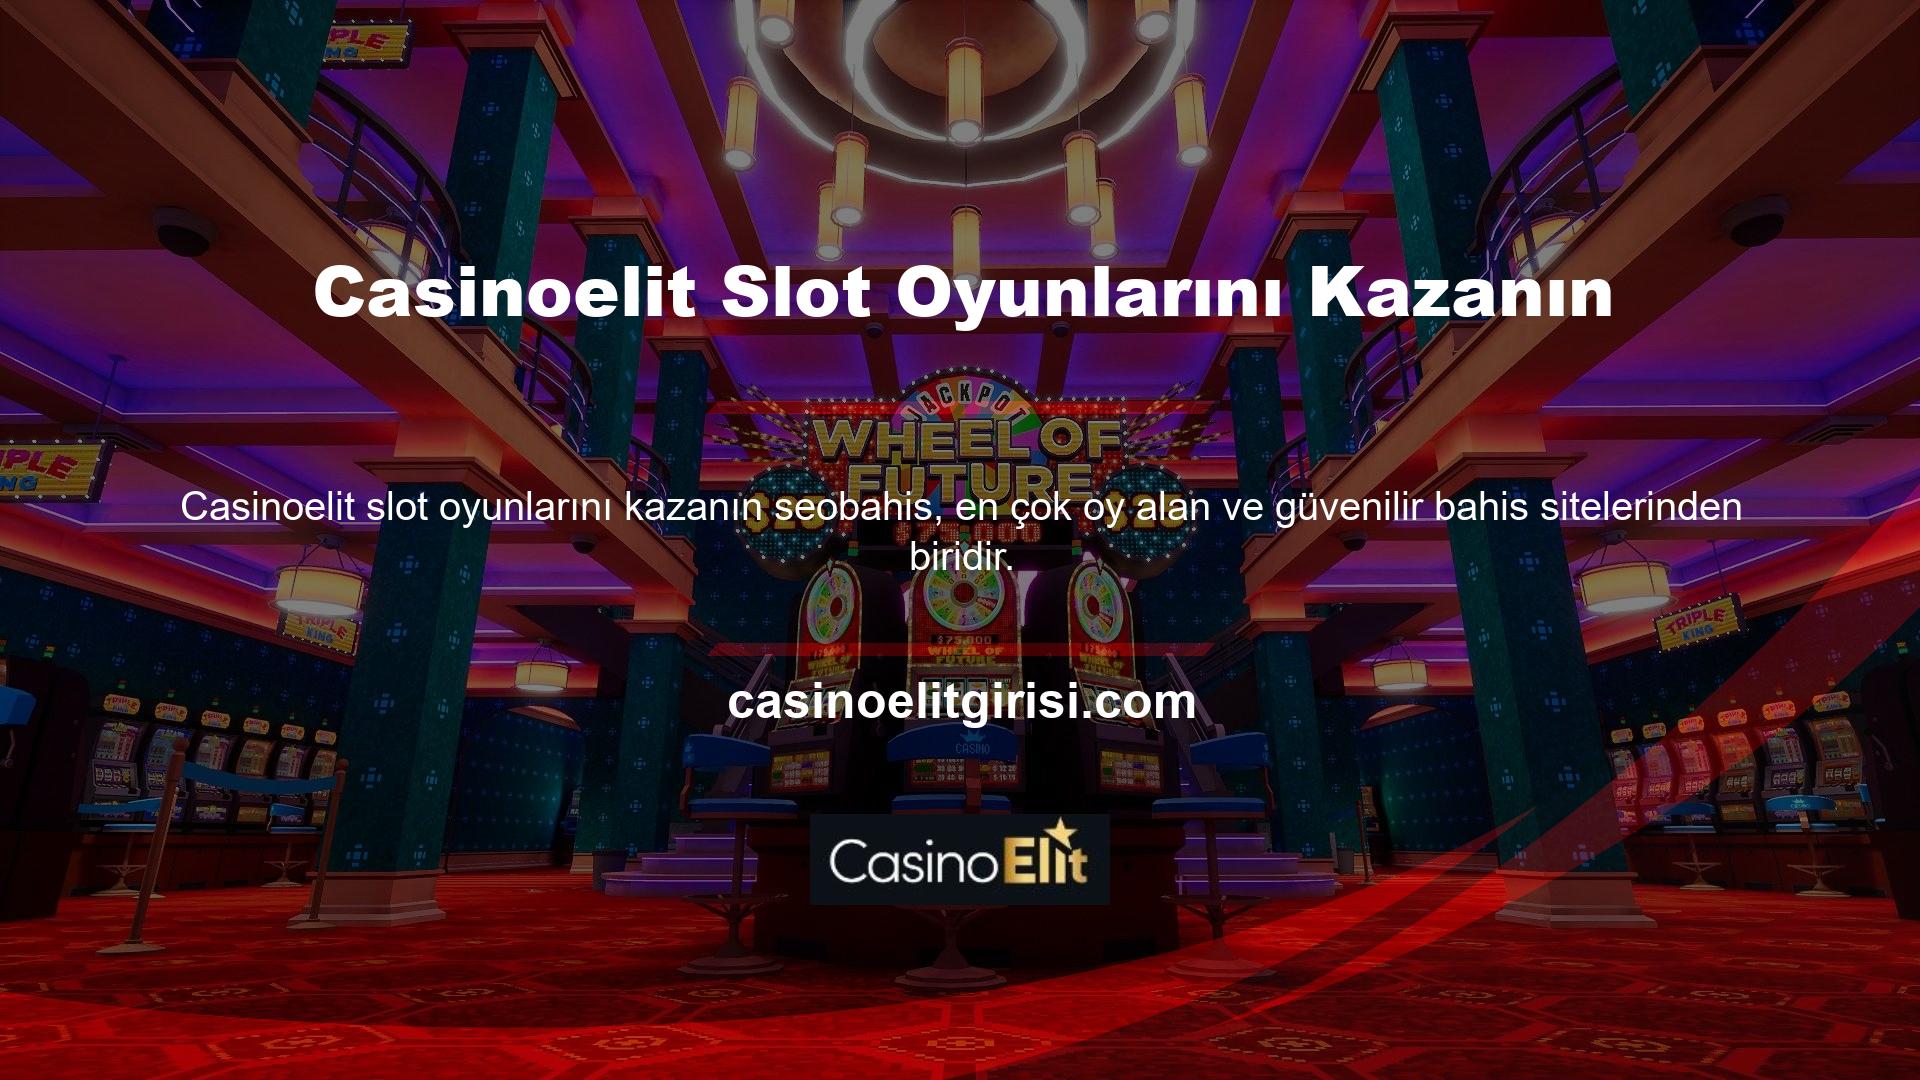 Sonuç olarak oldukça gelişmiş bir ödeme yapısına sahip olan Casinoelit sadece sunduğu casino oyunlarından değil slot makine oyunlarından da yüksek kazançlar elde etmektedir